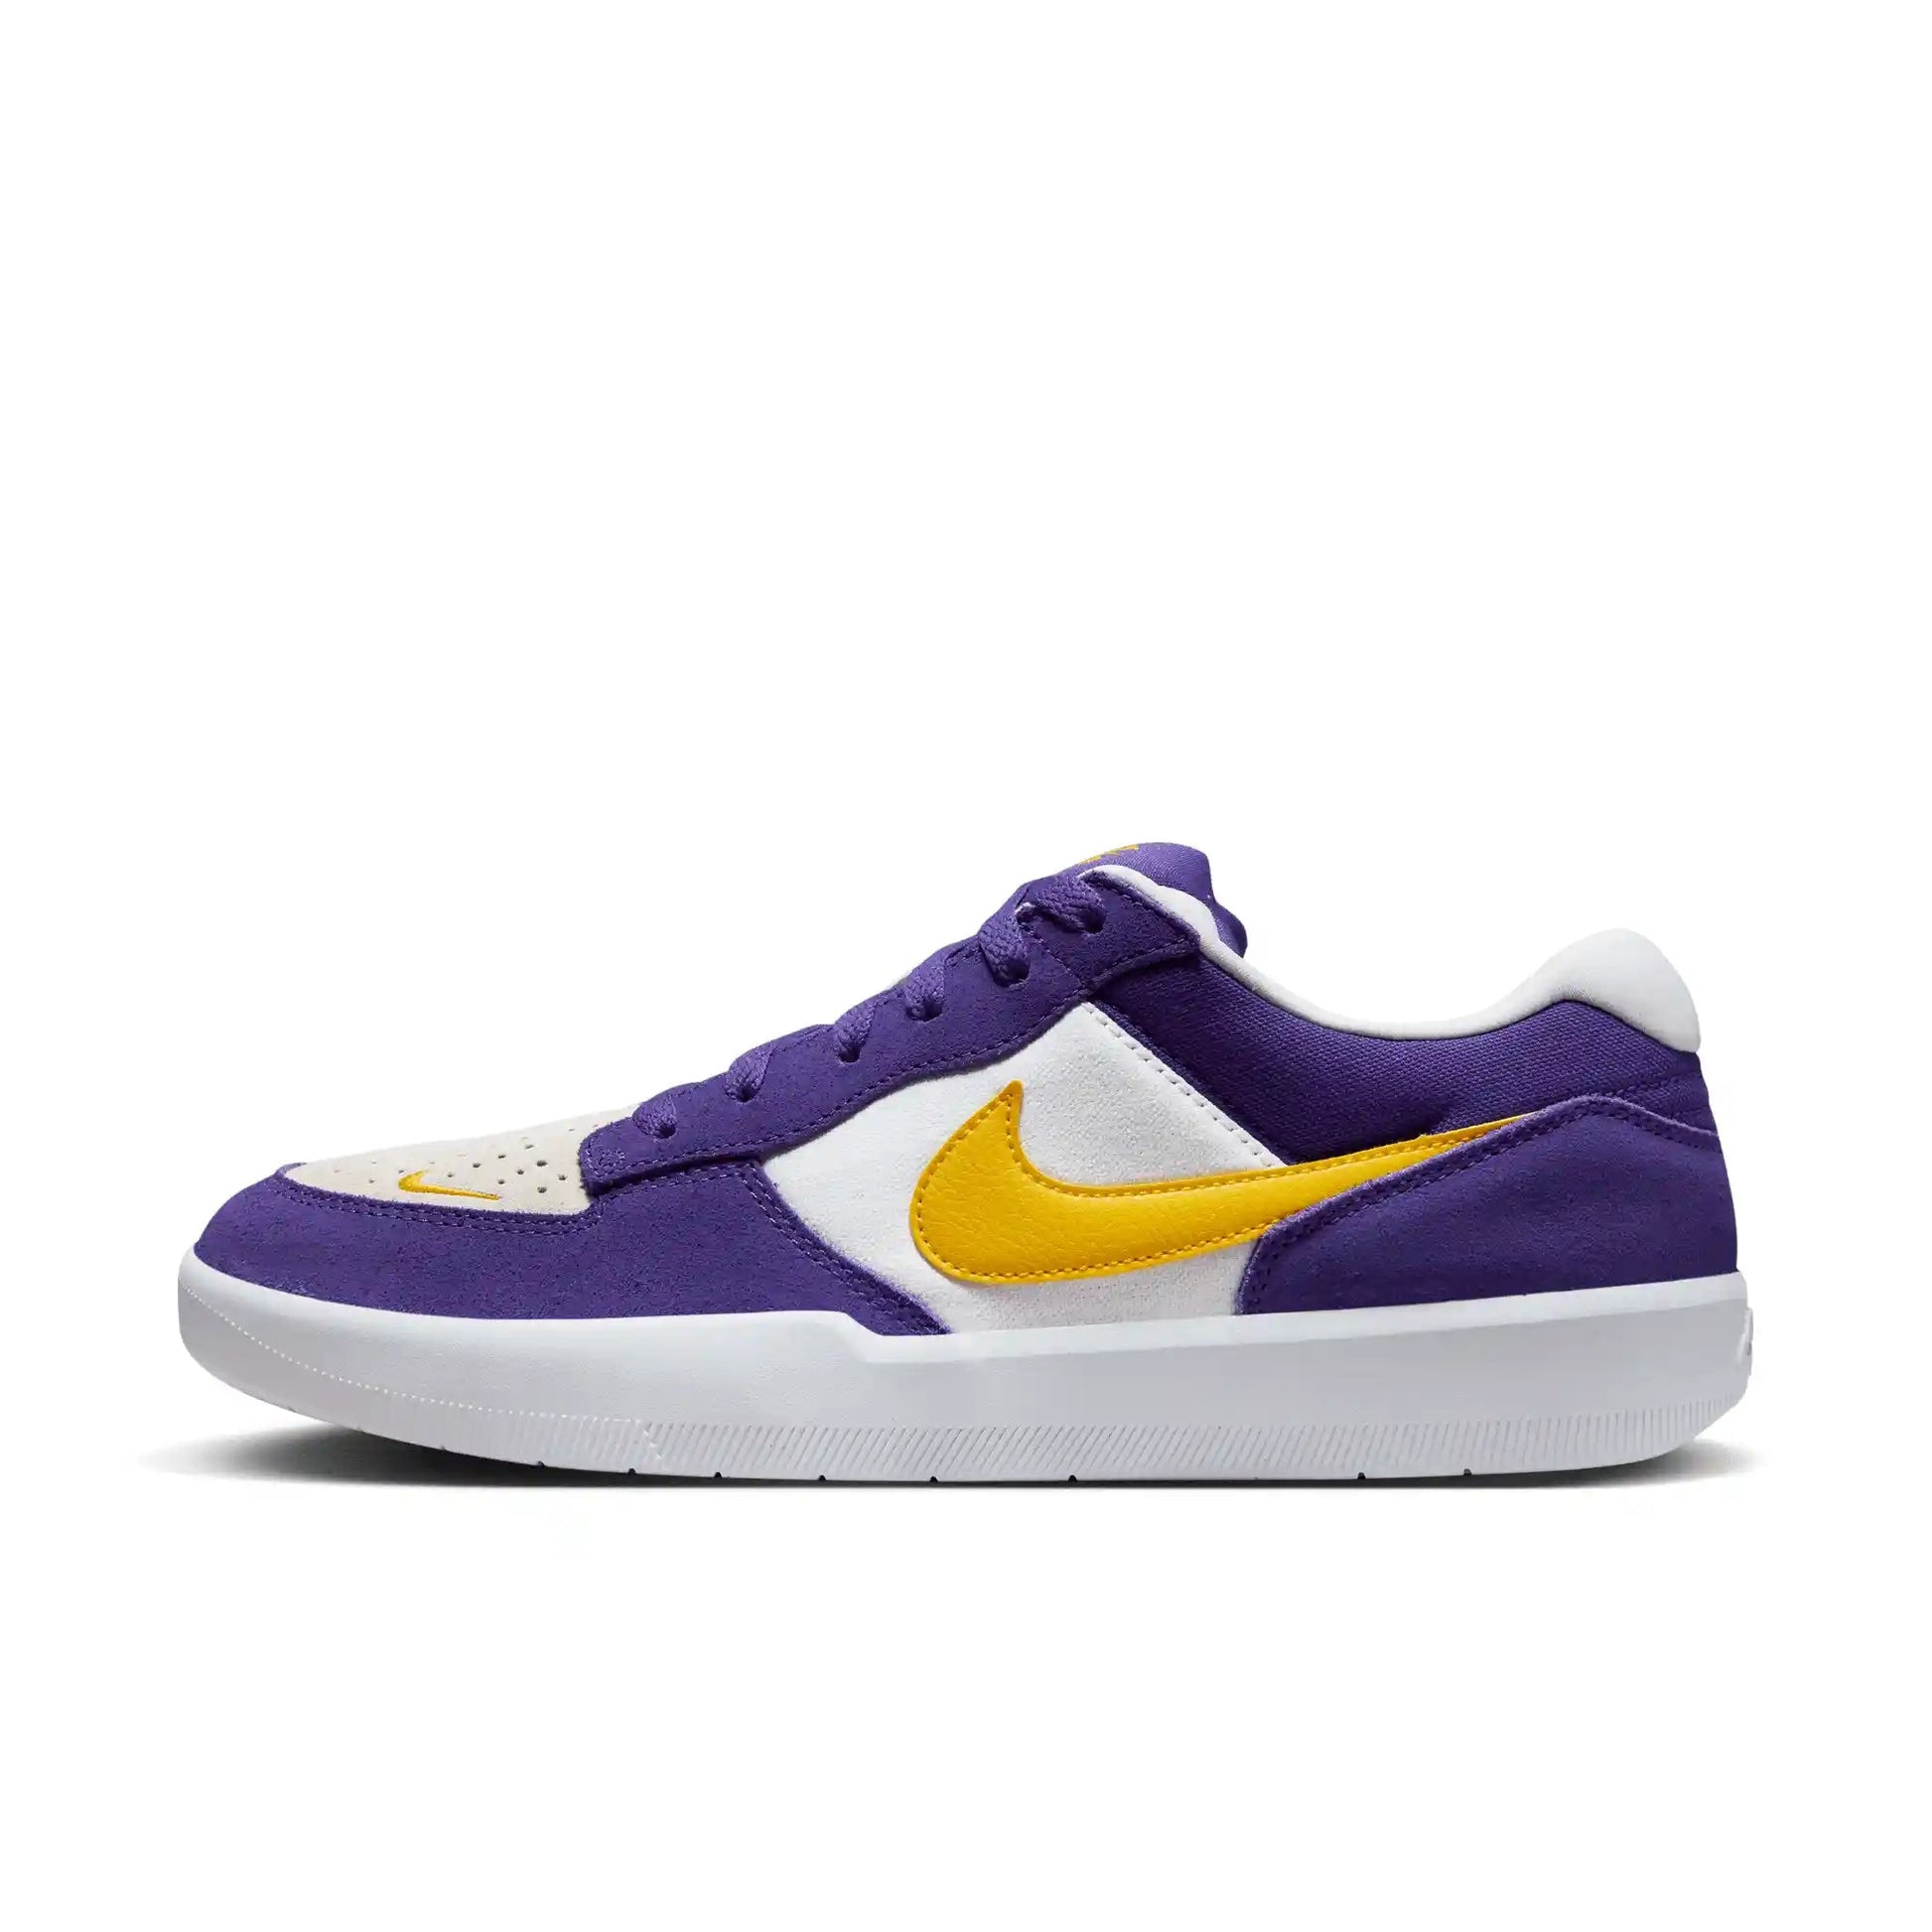 Nike SB Force 58, court purple/amarillo-white-white - Tiki Room Skateboards - 10